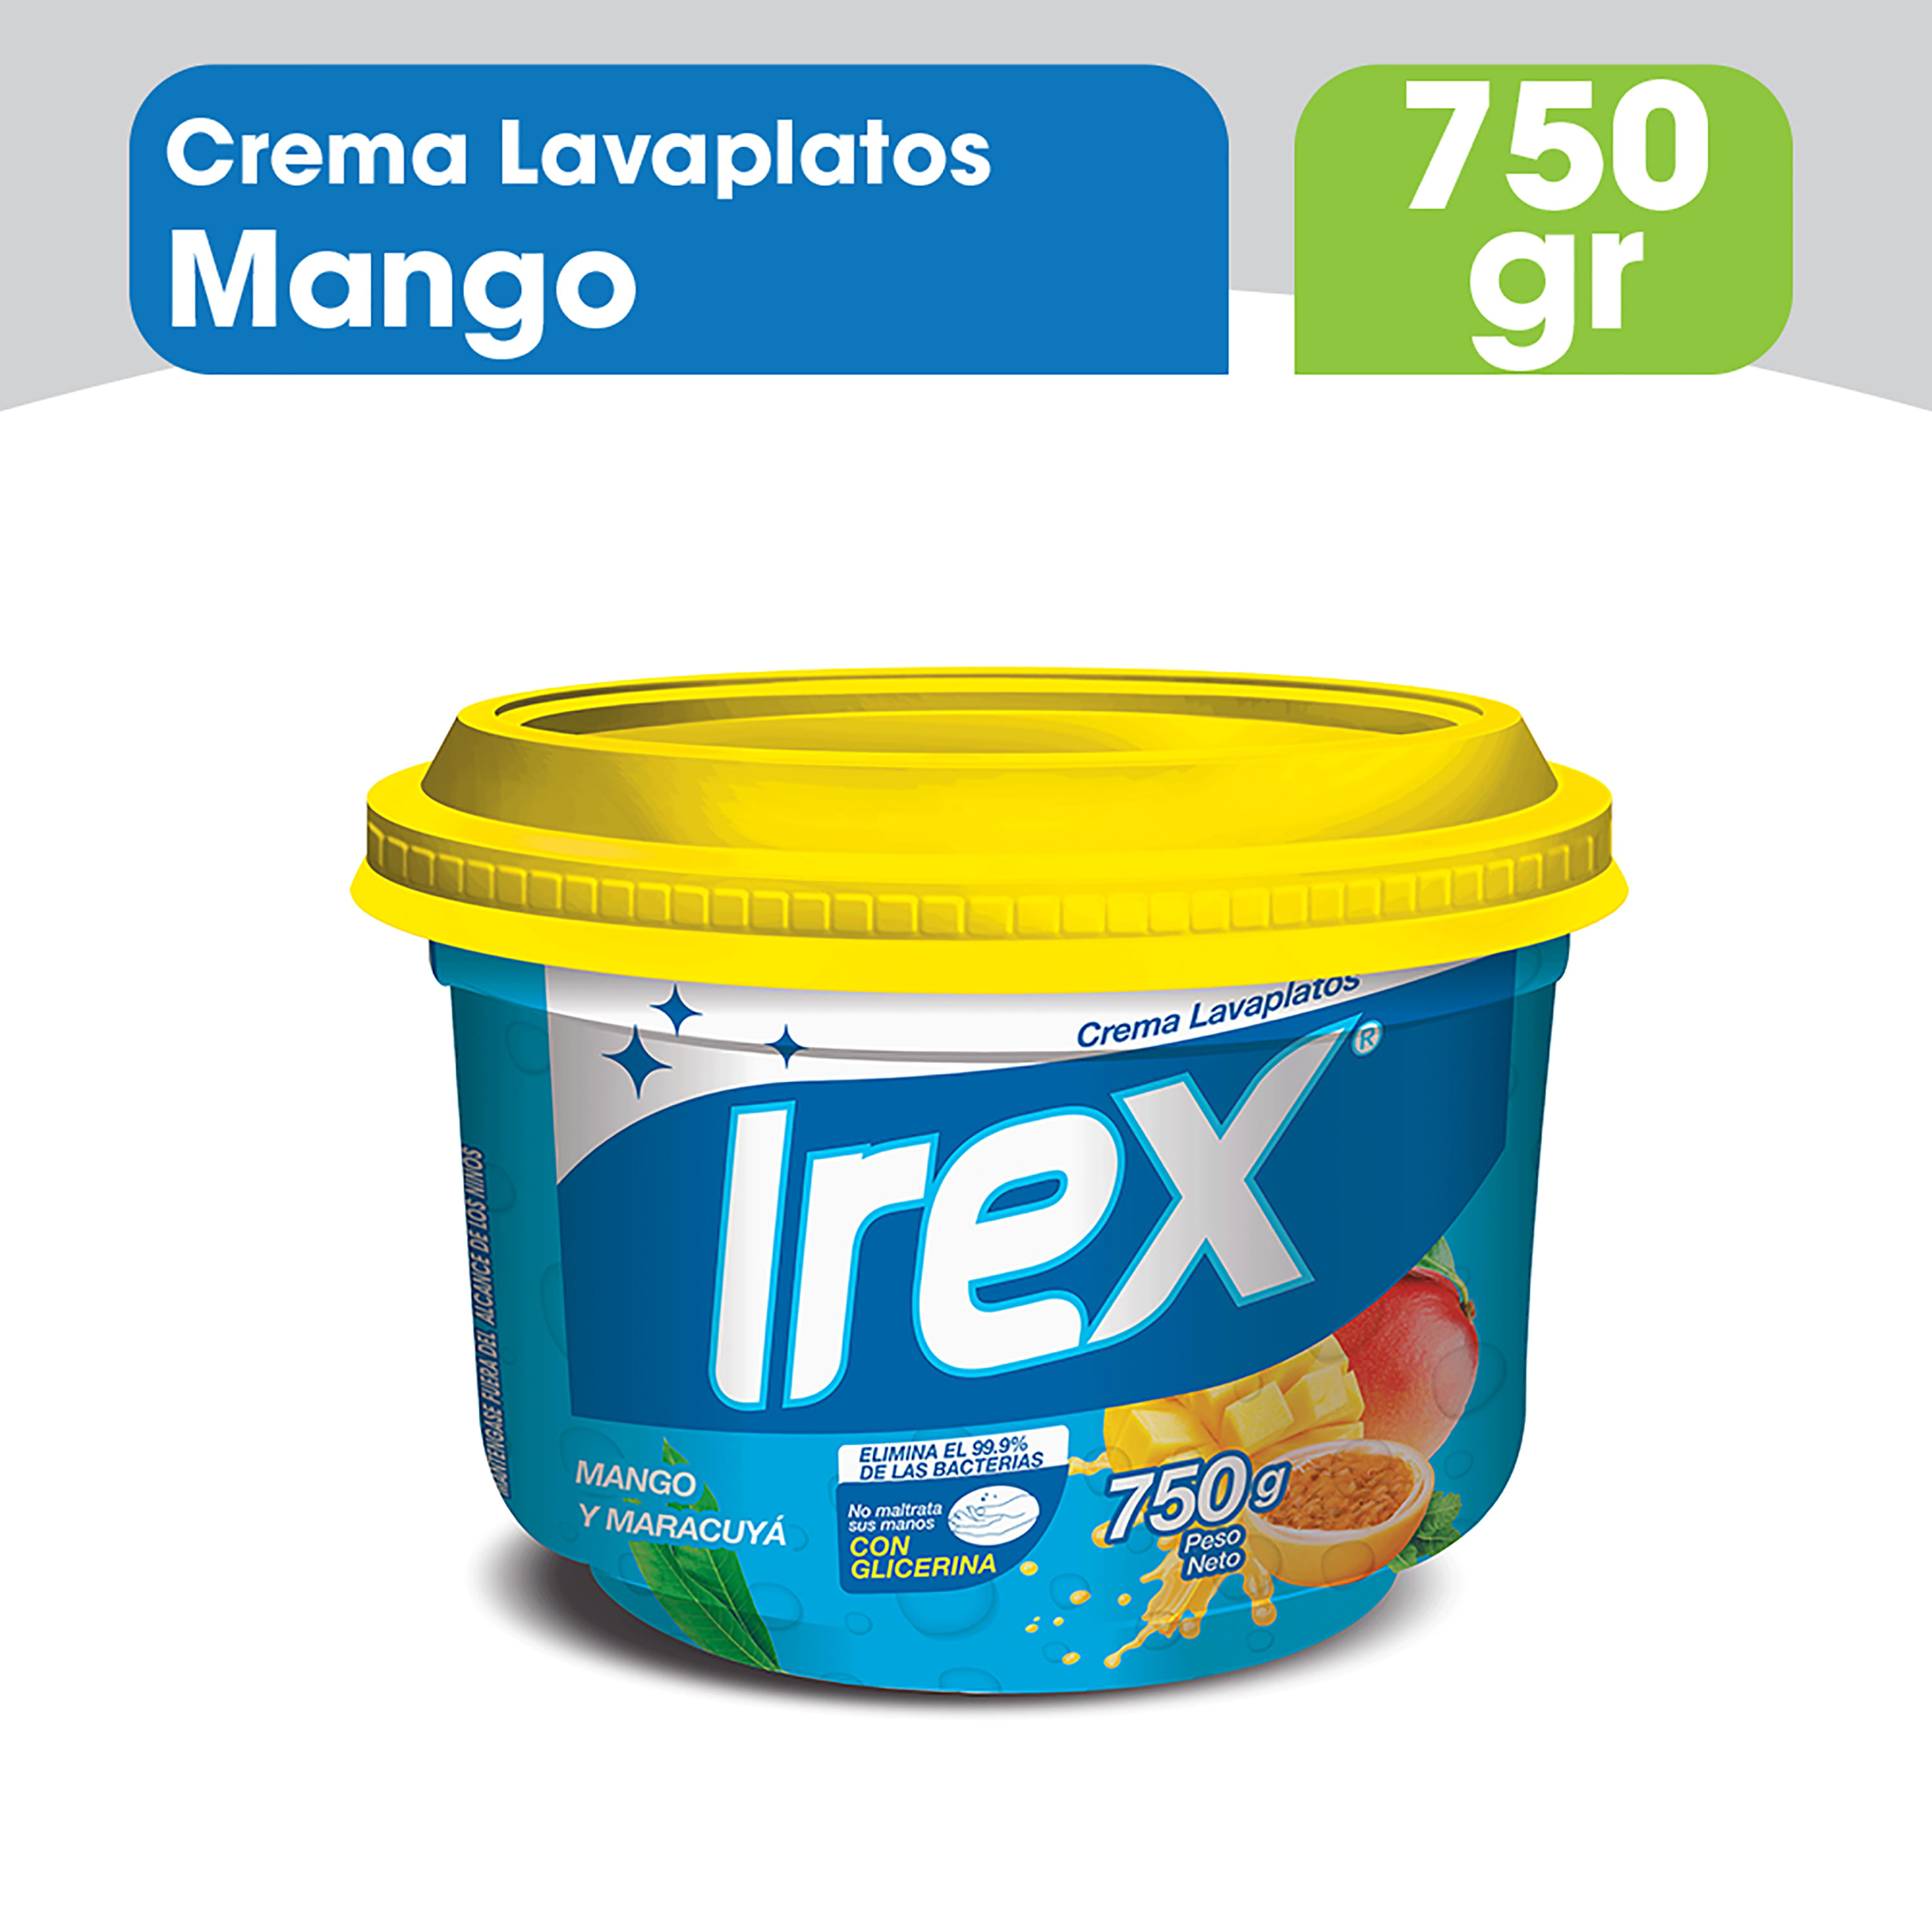 Lavaplatos-Irex-Crema-Mango-Maracuya-750gr-1-75260